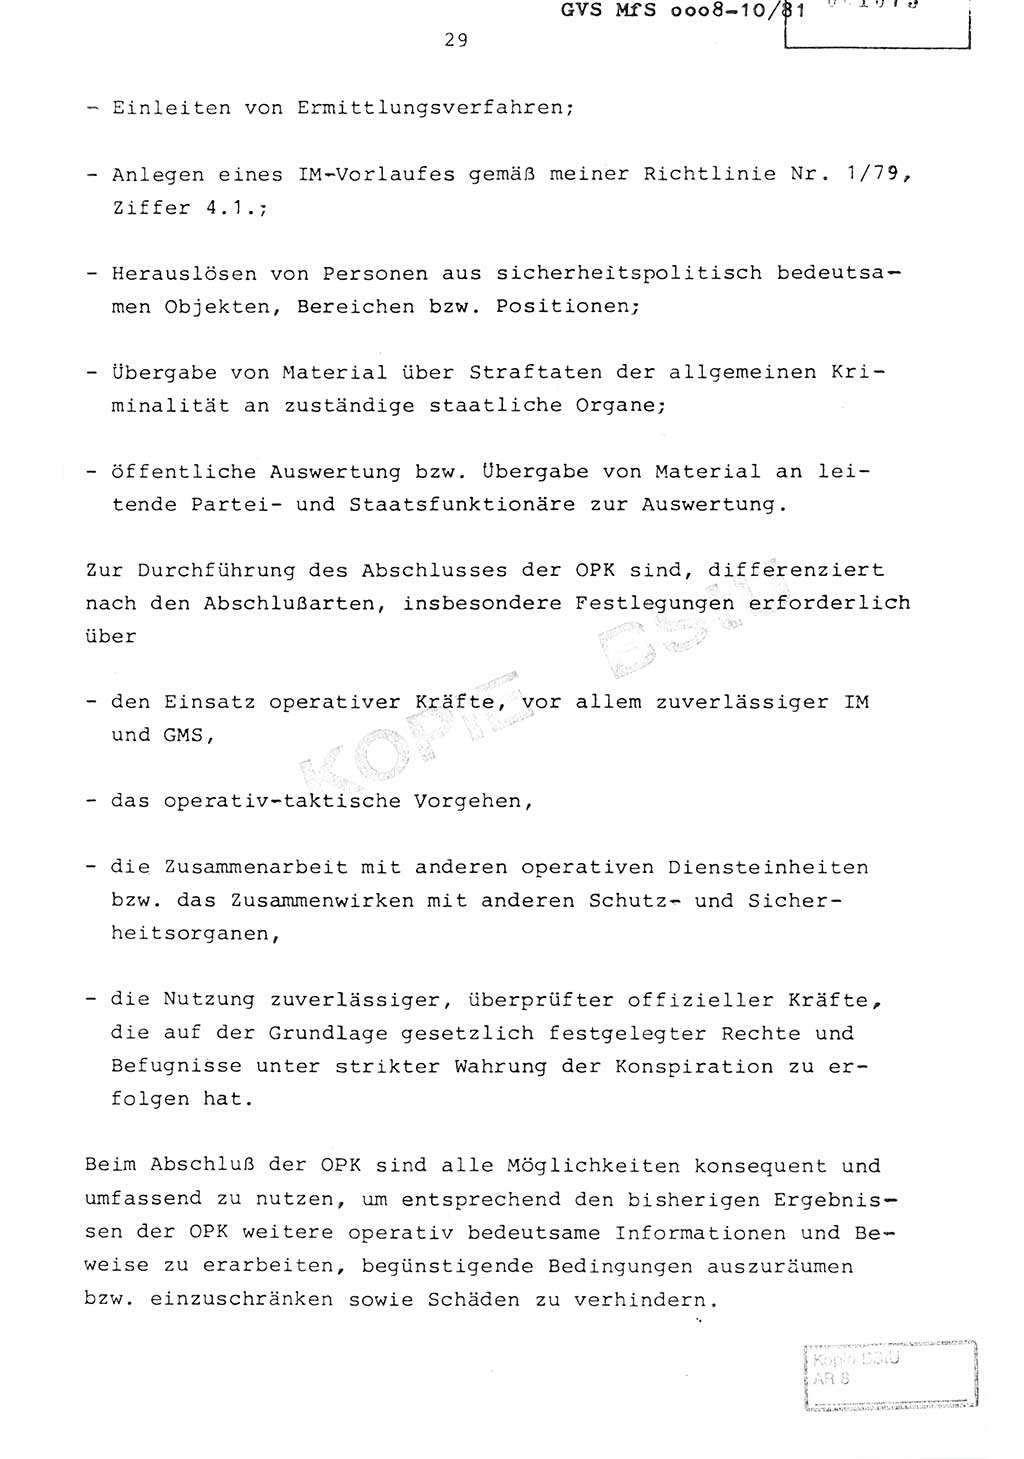 Richtlinie Nr. 1/81 über die operative Personenkontrolle (OPK), Ministerium für Staatssicherheit (MfS) [Deutsche Demokratische Republik (DDR)], Der Minister, Geheime Verschlußsache (GVS) ooo8-10/81, Berlin 1981, Blatt 29 (RL 1/81 OPK DDR MfS Min. GVS ooo8-10/81 1981, Bl. 29)